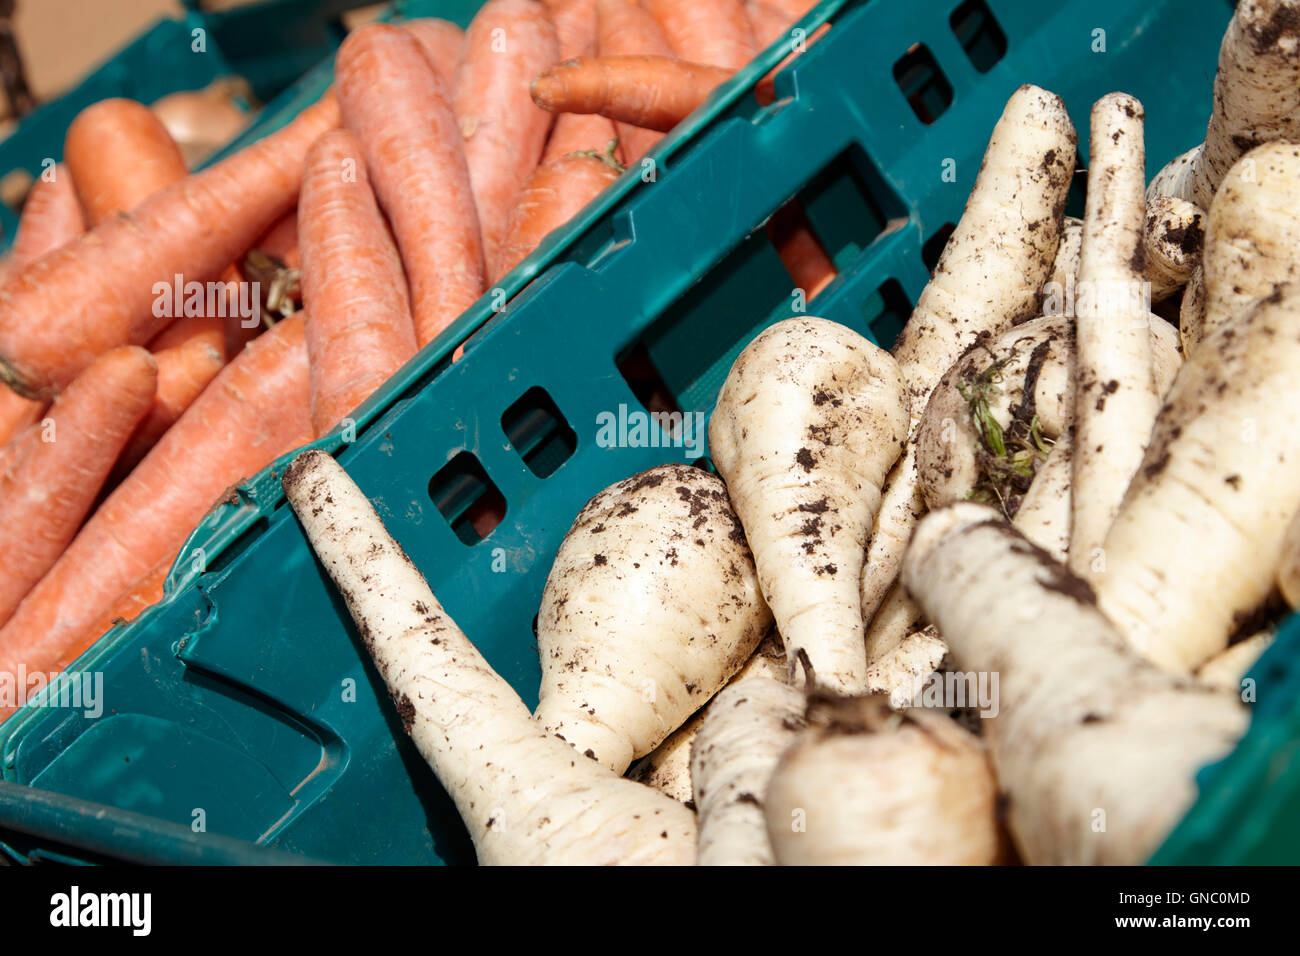 Pastinaca freschi e carote sul display un fruttivendolo stallo alimentari nel Regno Unito Foto Stock